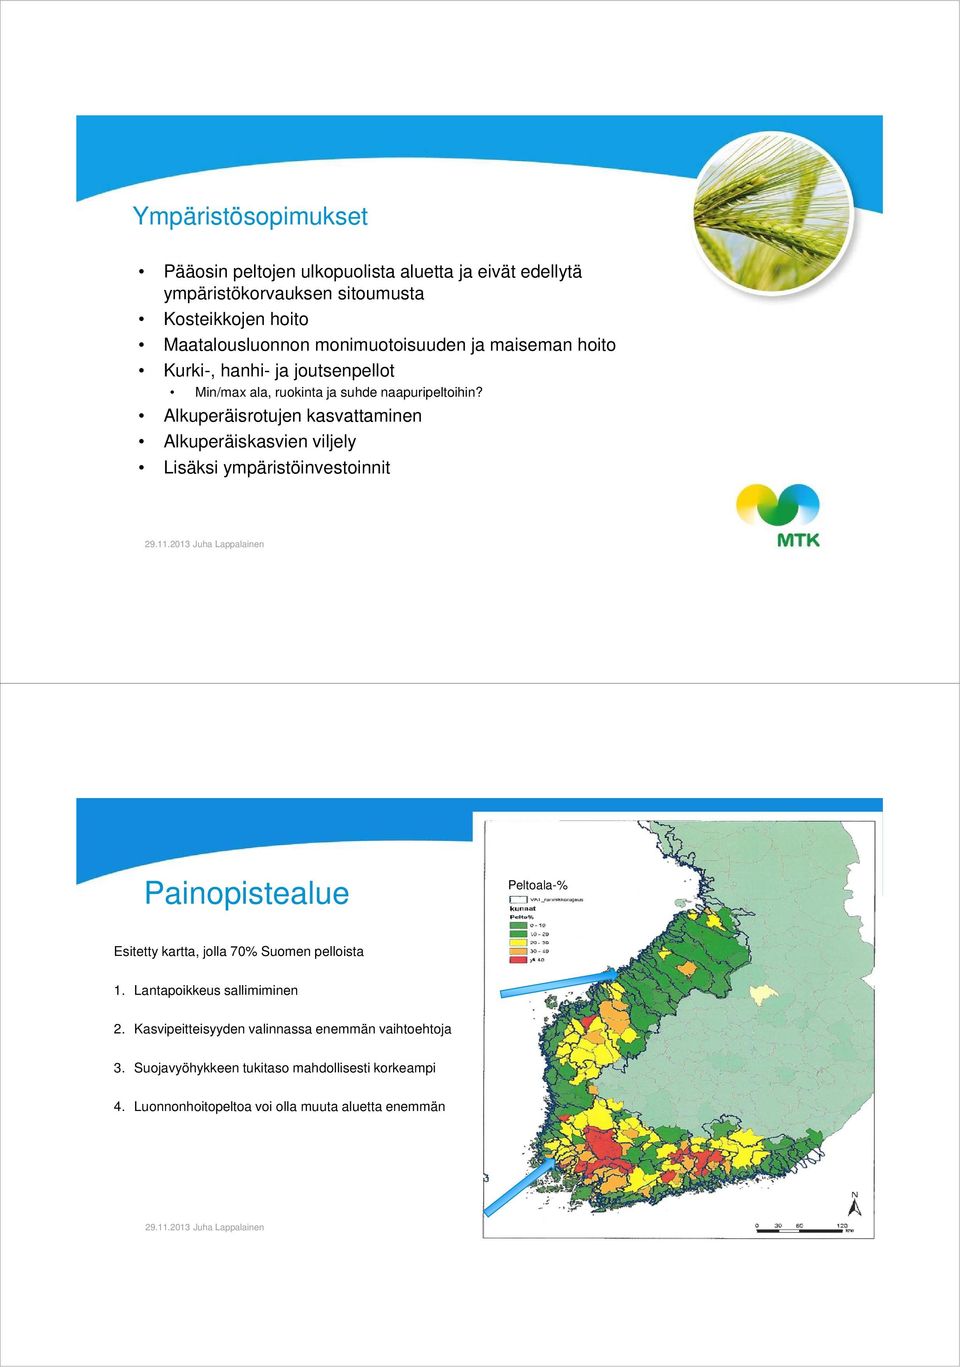 Alkuperäisrotujen kasvattaminen Alkuperäiskasvien viljely Lisäksi ympäristöinvestoinnit Painopistealue Peltoala-% Esitetty kartta, jolla 70% Suomen